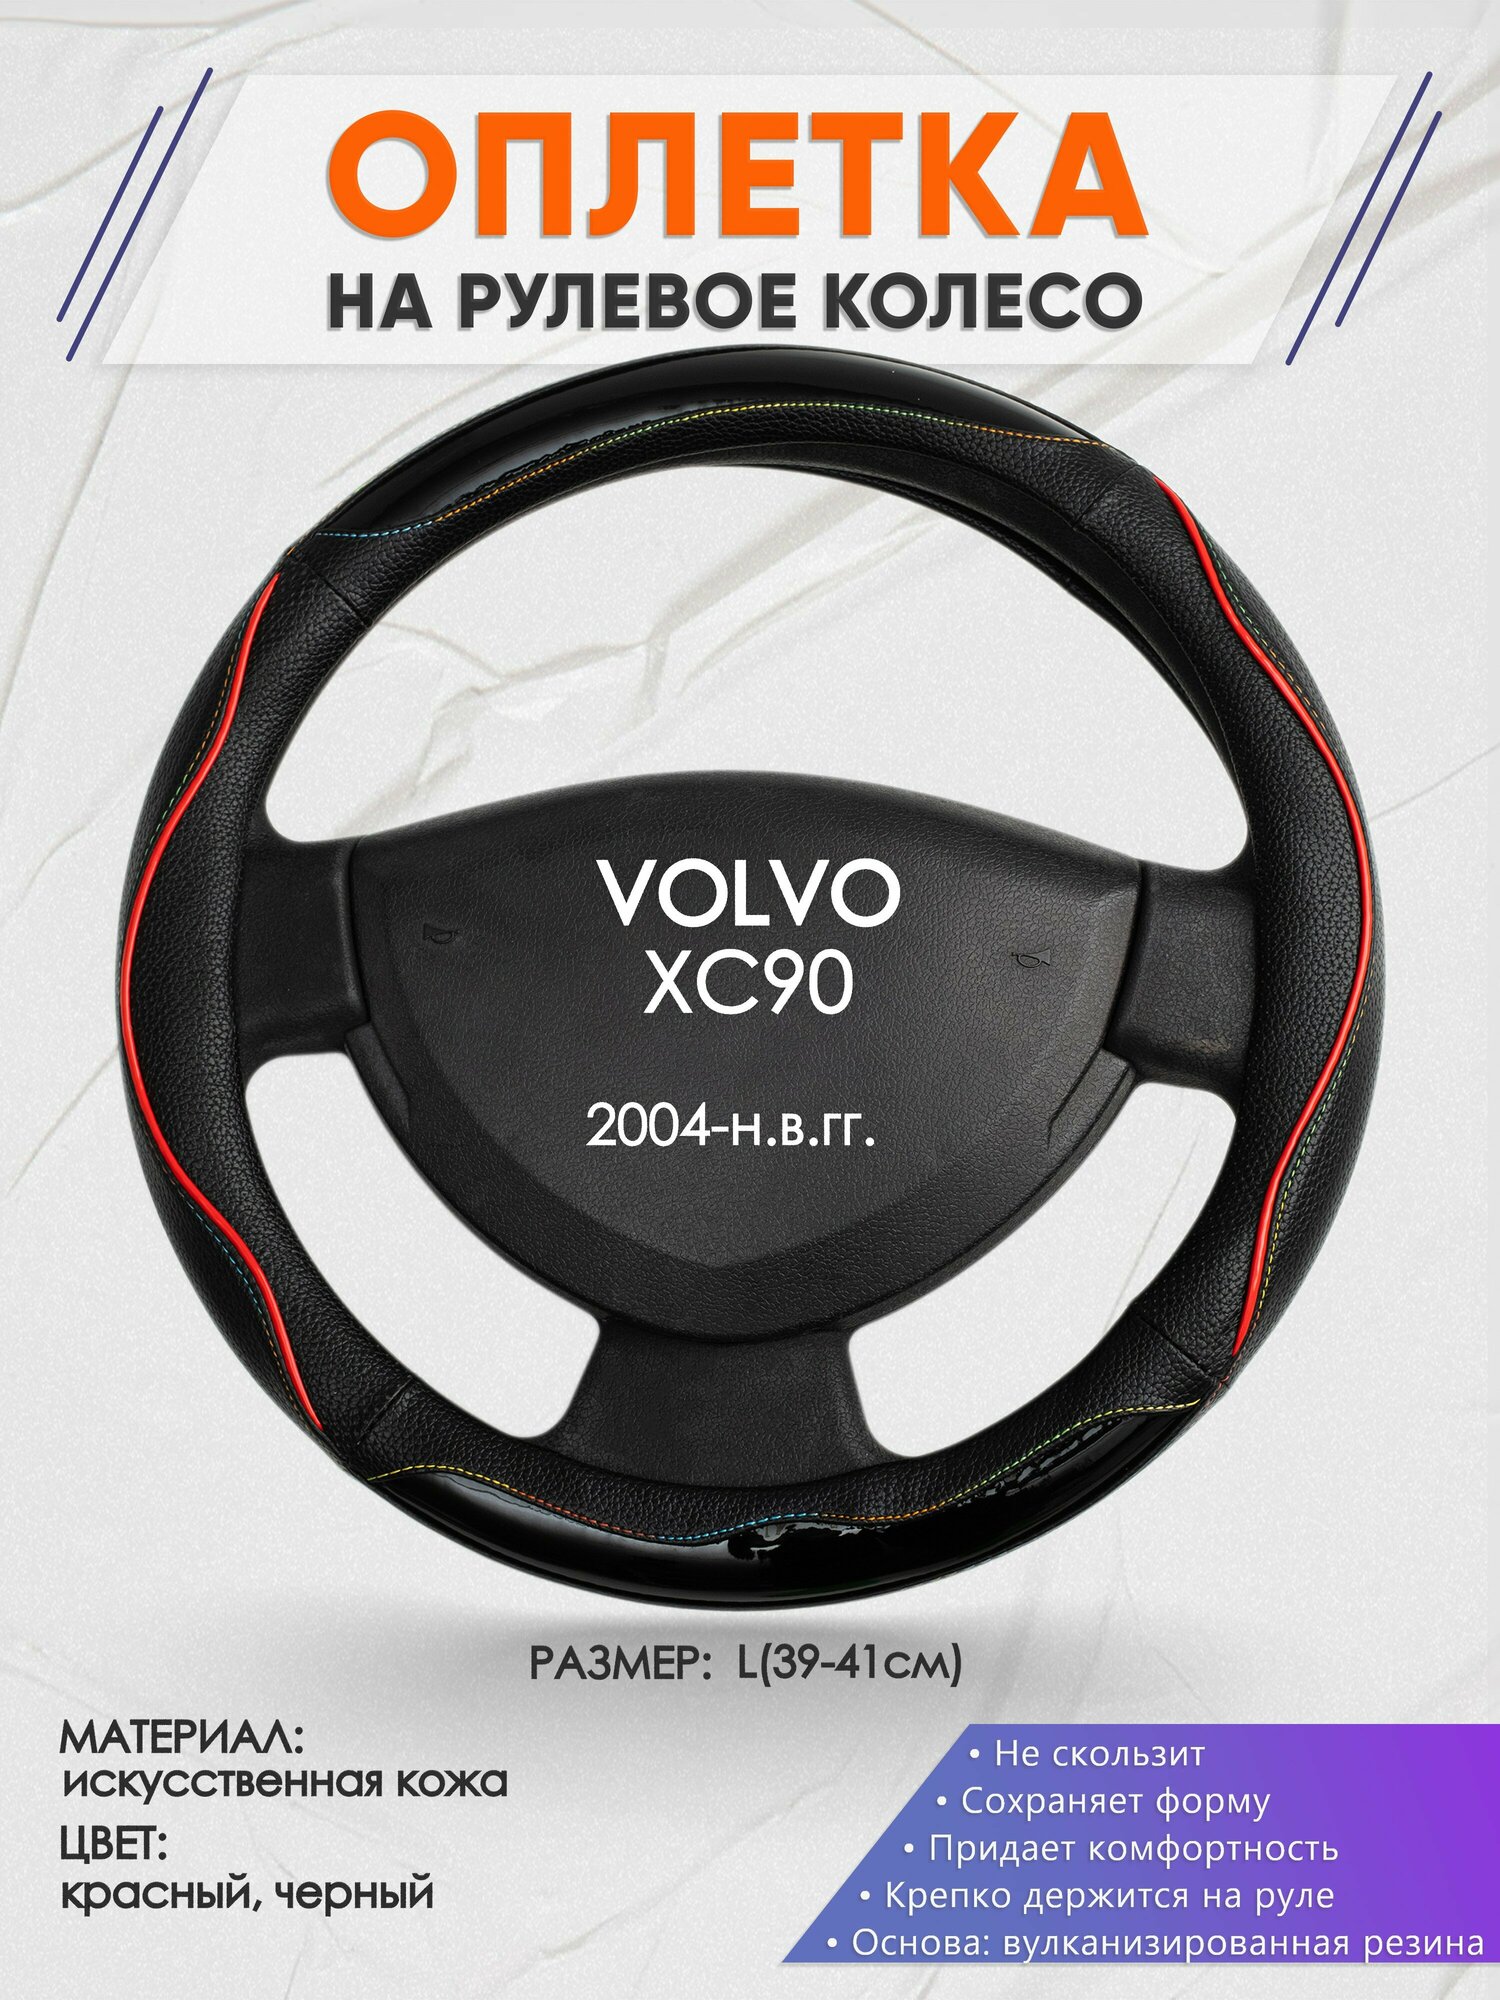 Оплетка на руль для VOLVO XC90(Вольво иксс90) 2004-н.в., L(39-41см), Искусственная кожа 76